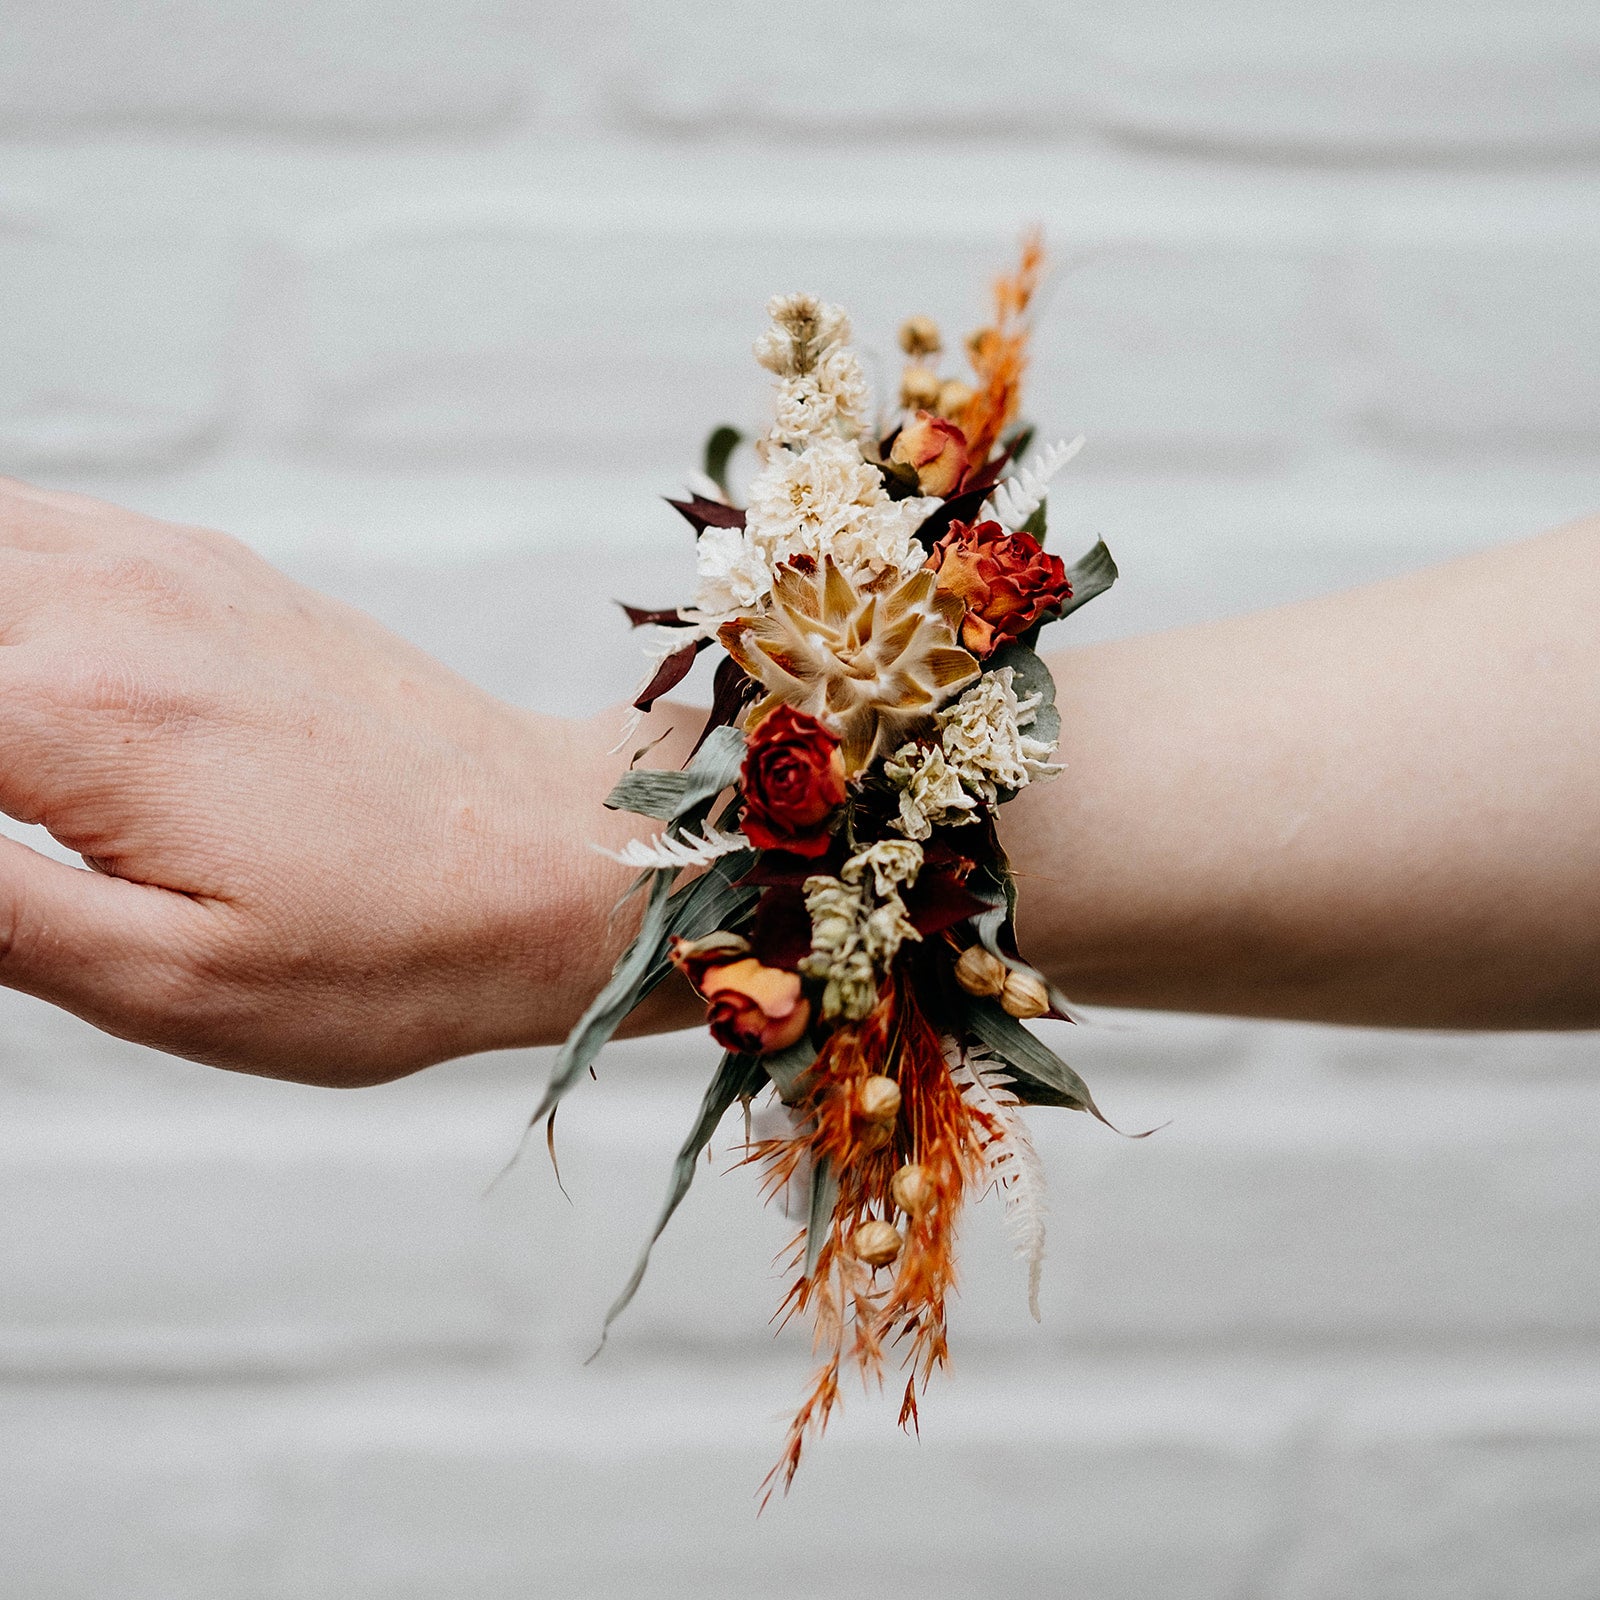 Kluisje Verbeteren Ondoorzichtig Polscorsage Bruid – Magical Flower